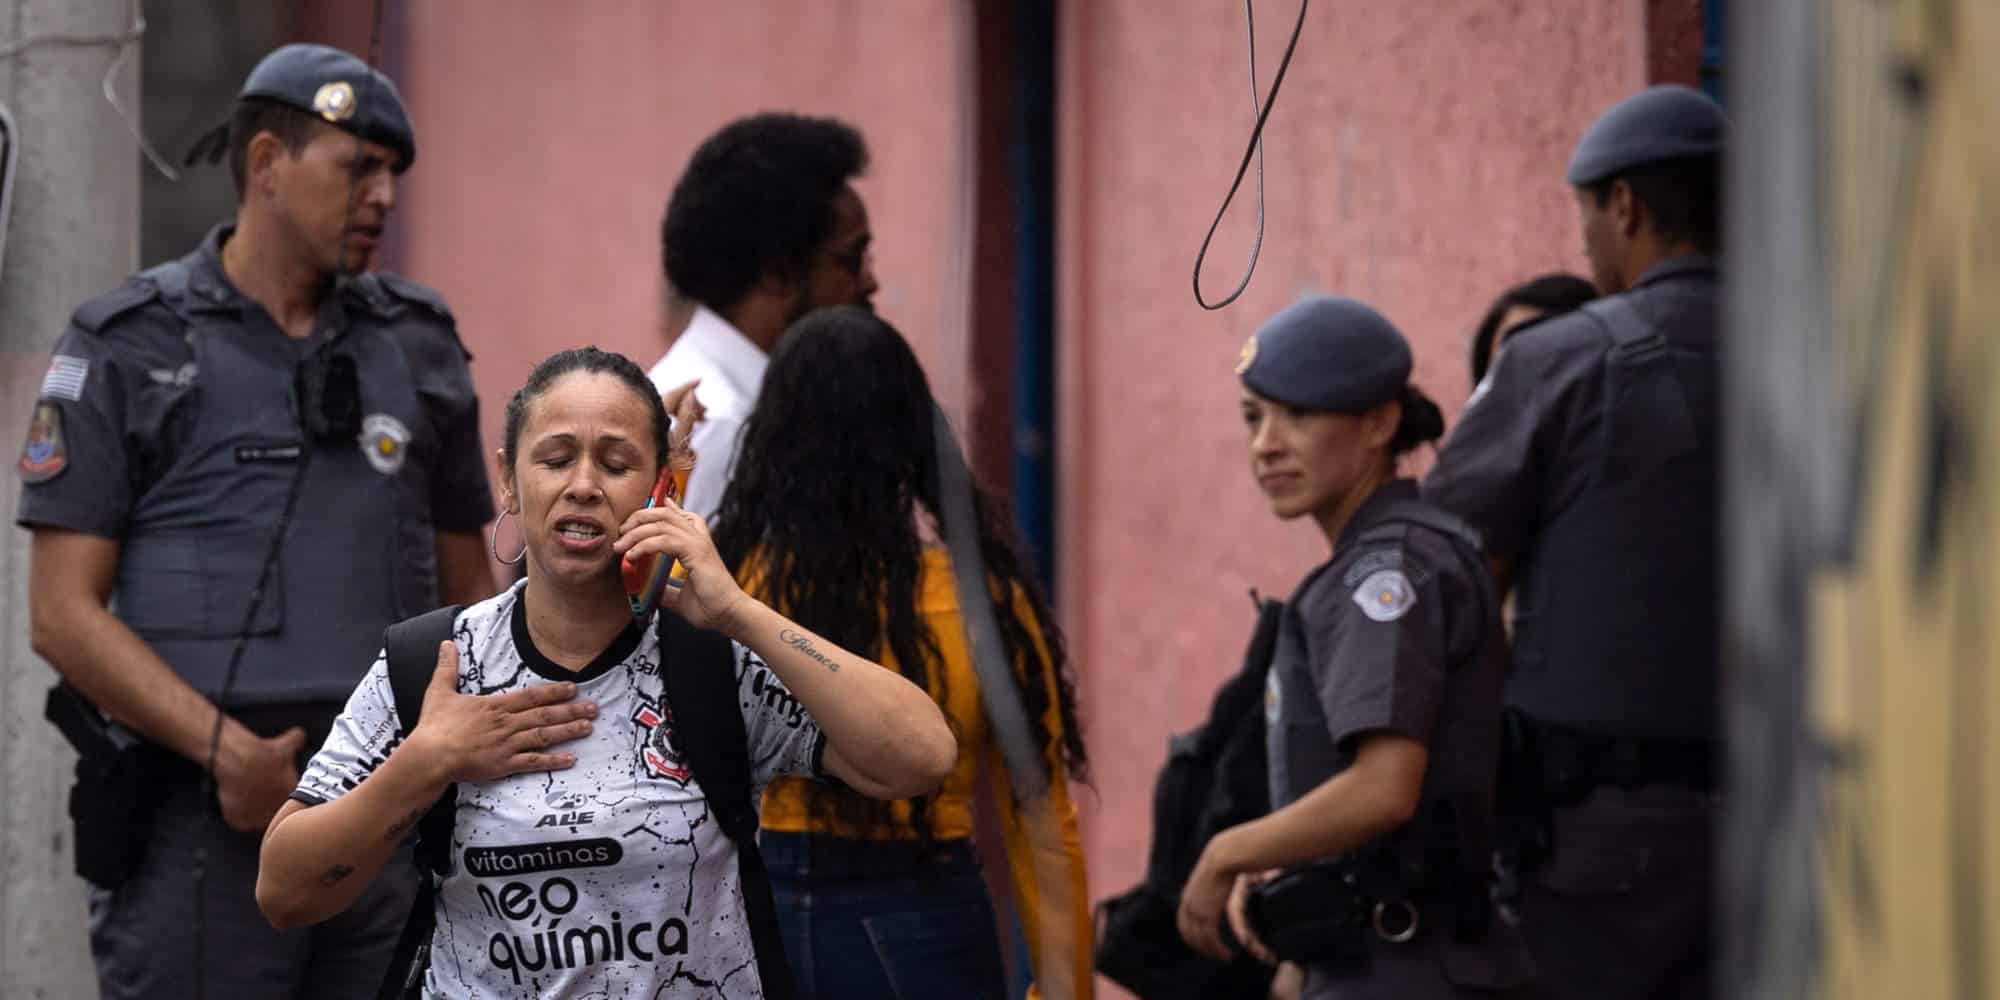 Ισχυρές αστυνομικές δυνάμεις σε σχολείο στη Βραζιλία, μετά την αιματηρή επίθεση με μαχαίρι / Φωτογραφία: ΑΠΕ